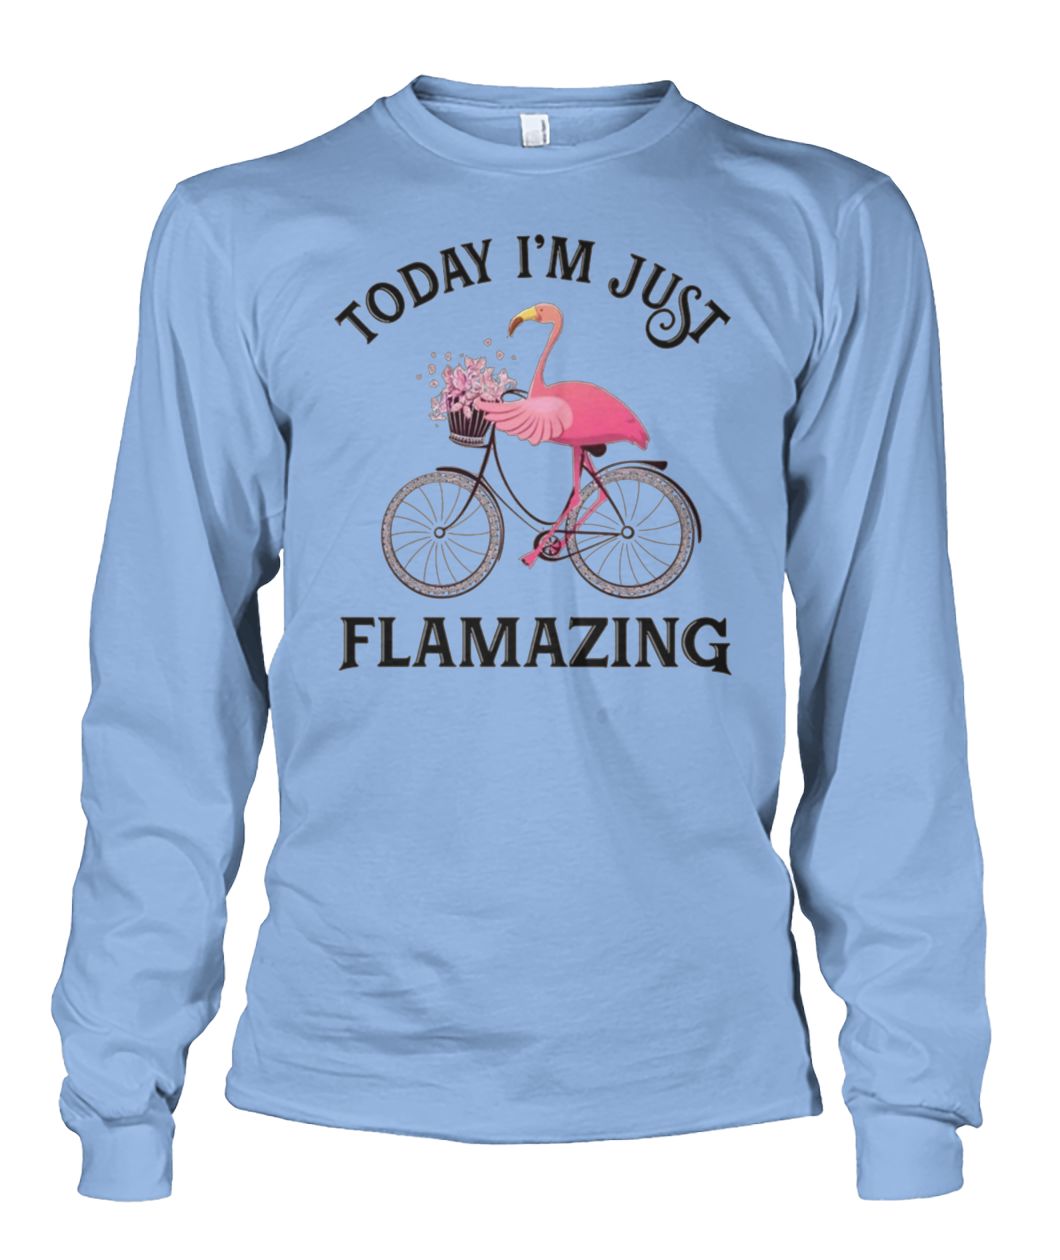 Flamingo today I'm just flamazing unisex long sleeve